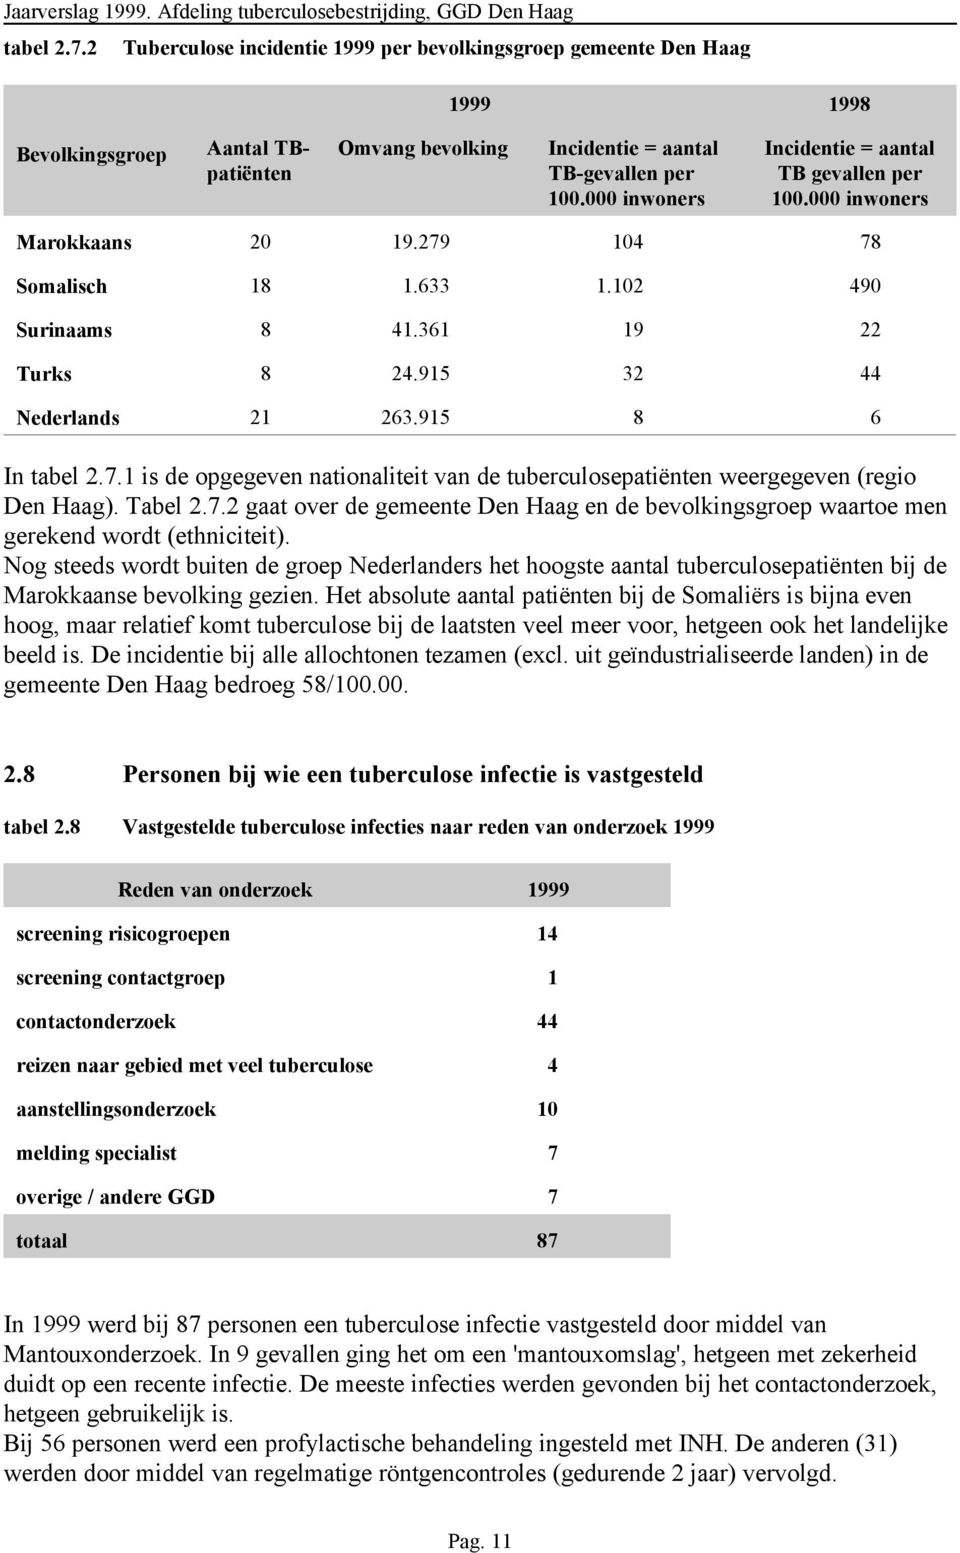 915 8 6 In tabel 2.7.1 is de opgegeven nationaliteit van de tuberculosepatiënten weergegeven (regio Den Haag). Tabel 2.7.2 gaat over de gemeente Den Haag en de bevolkingsgroep waartoe men gerekend wordt (ethniciteit).